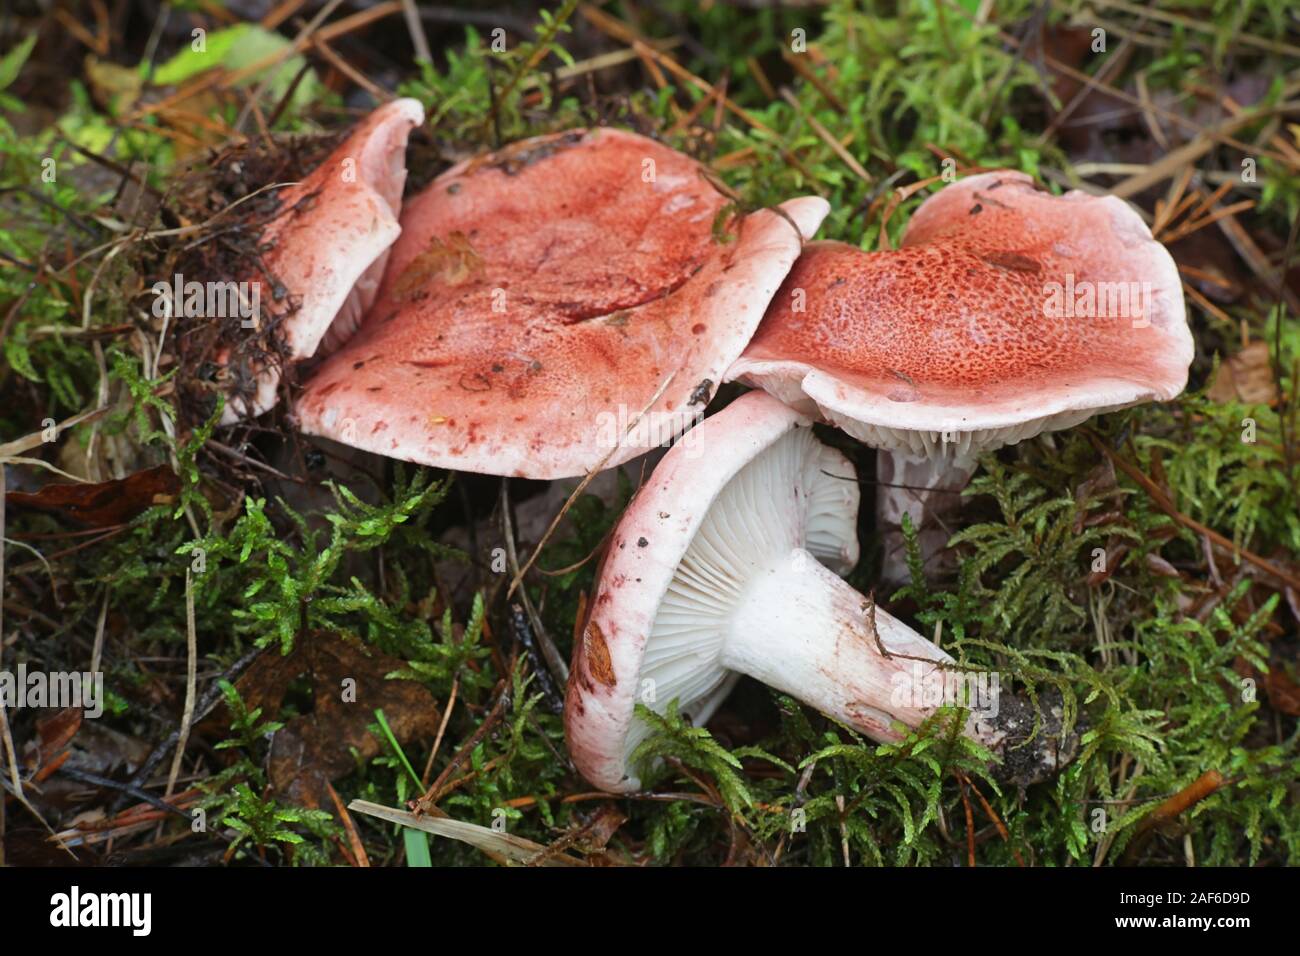 Hygrophorus bignonioides, bekannt als der gestromt woodwax oder Rosa waxcap, wilde Pilze aus Finnland Stockfoto